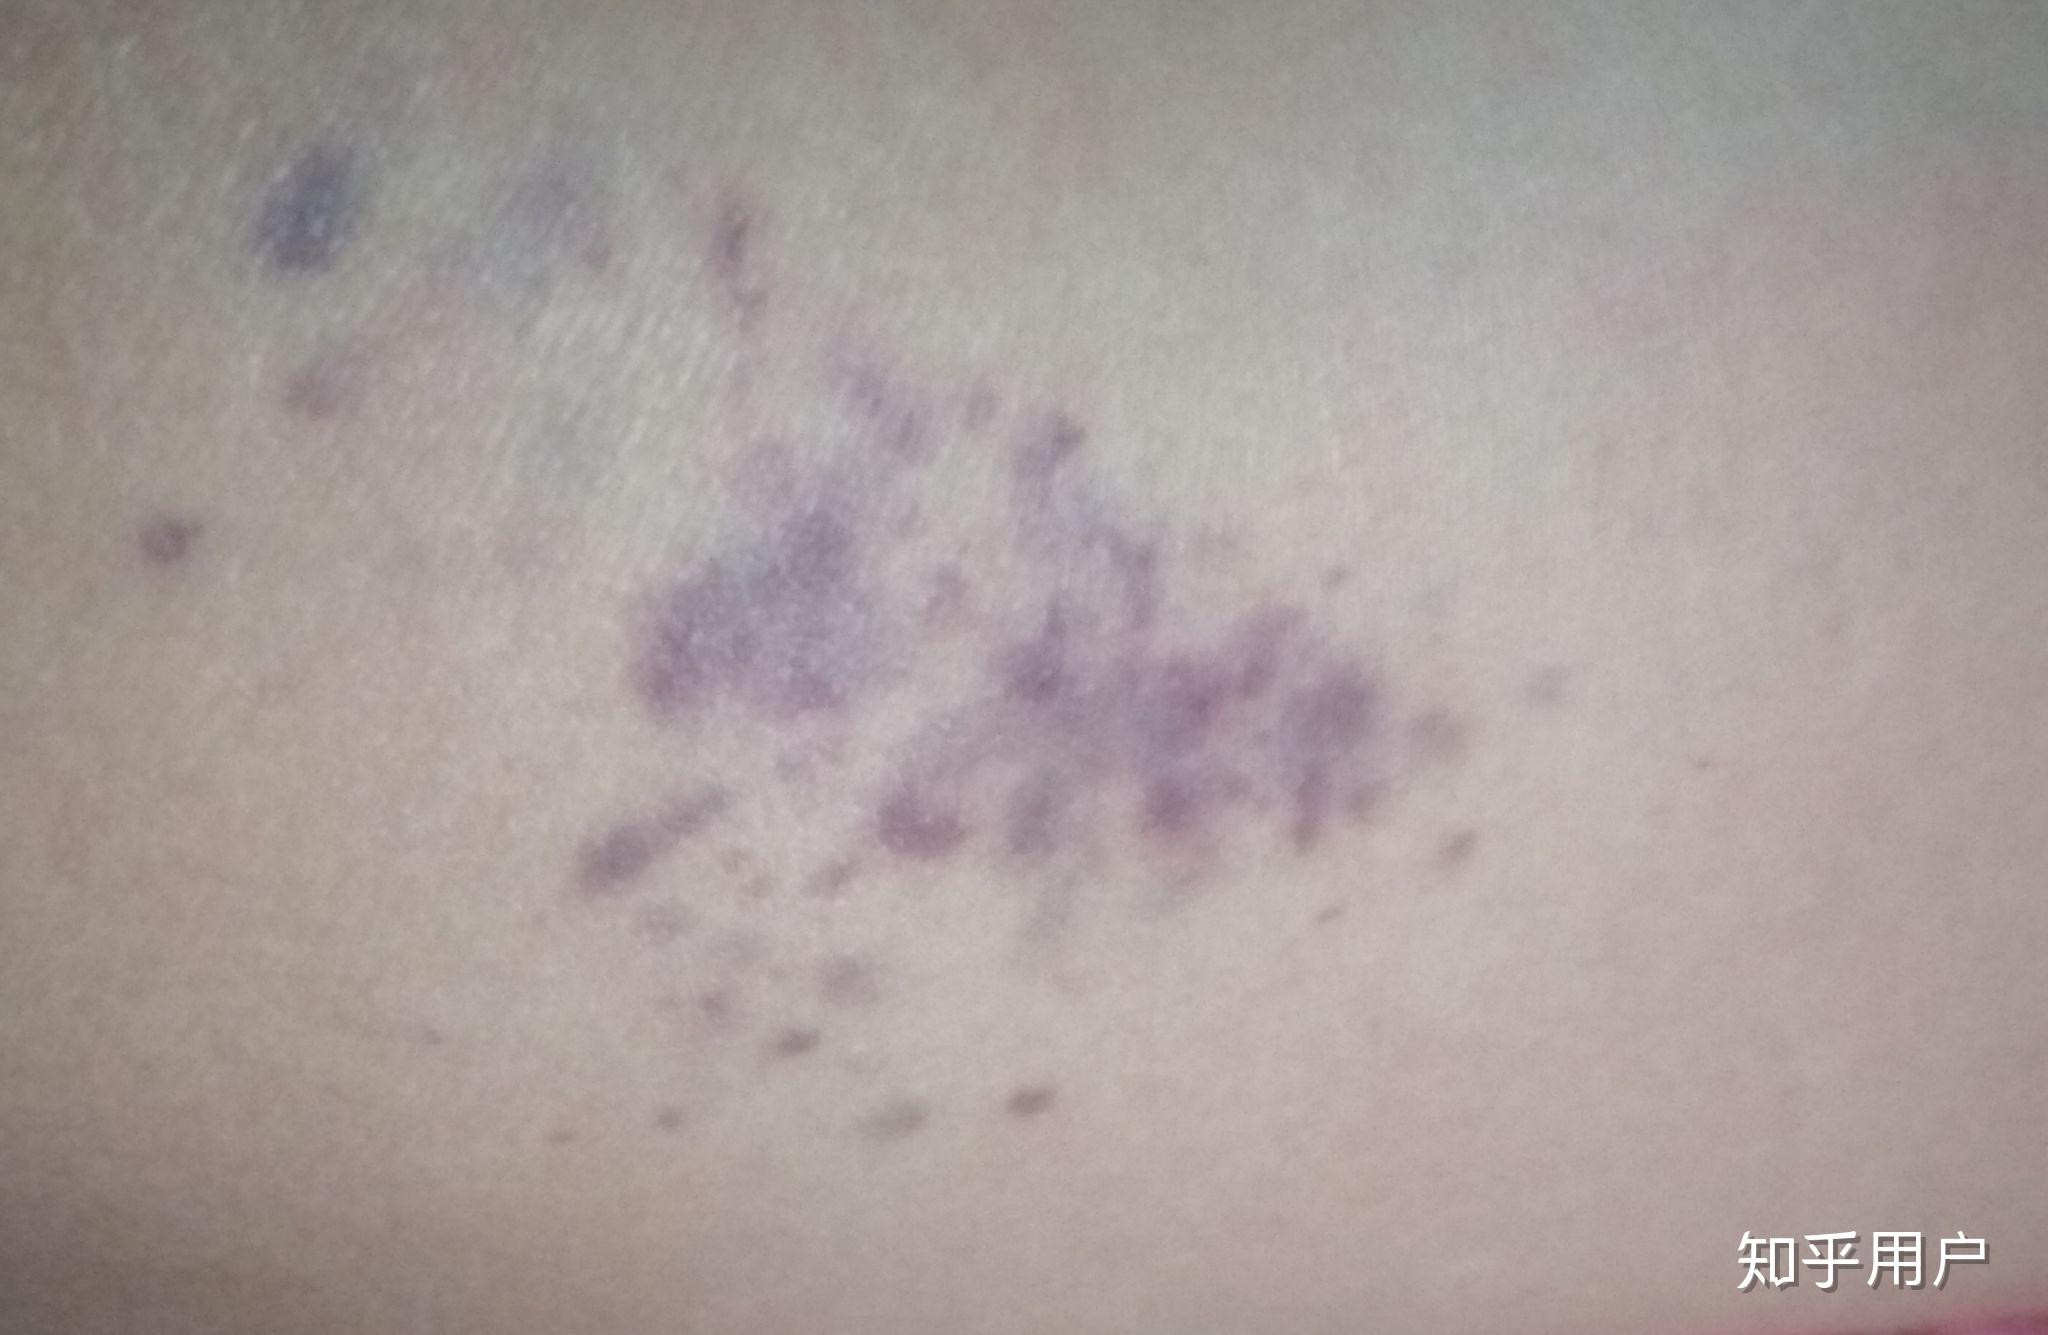 大腿紫癜初期的图片图片